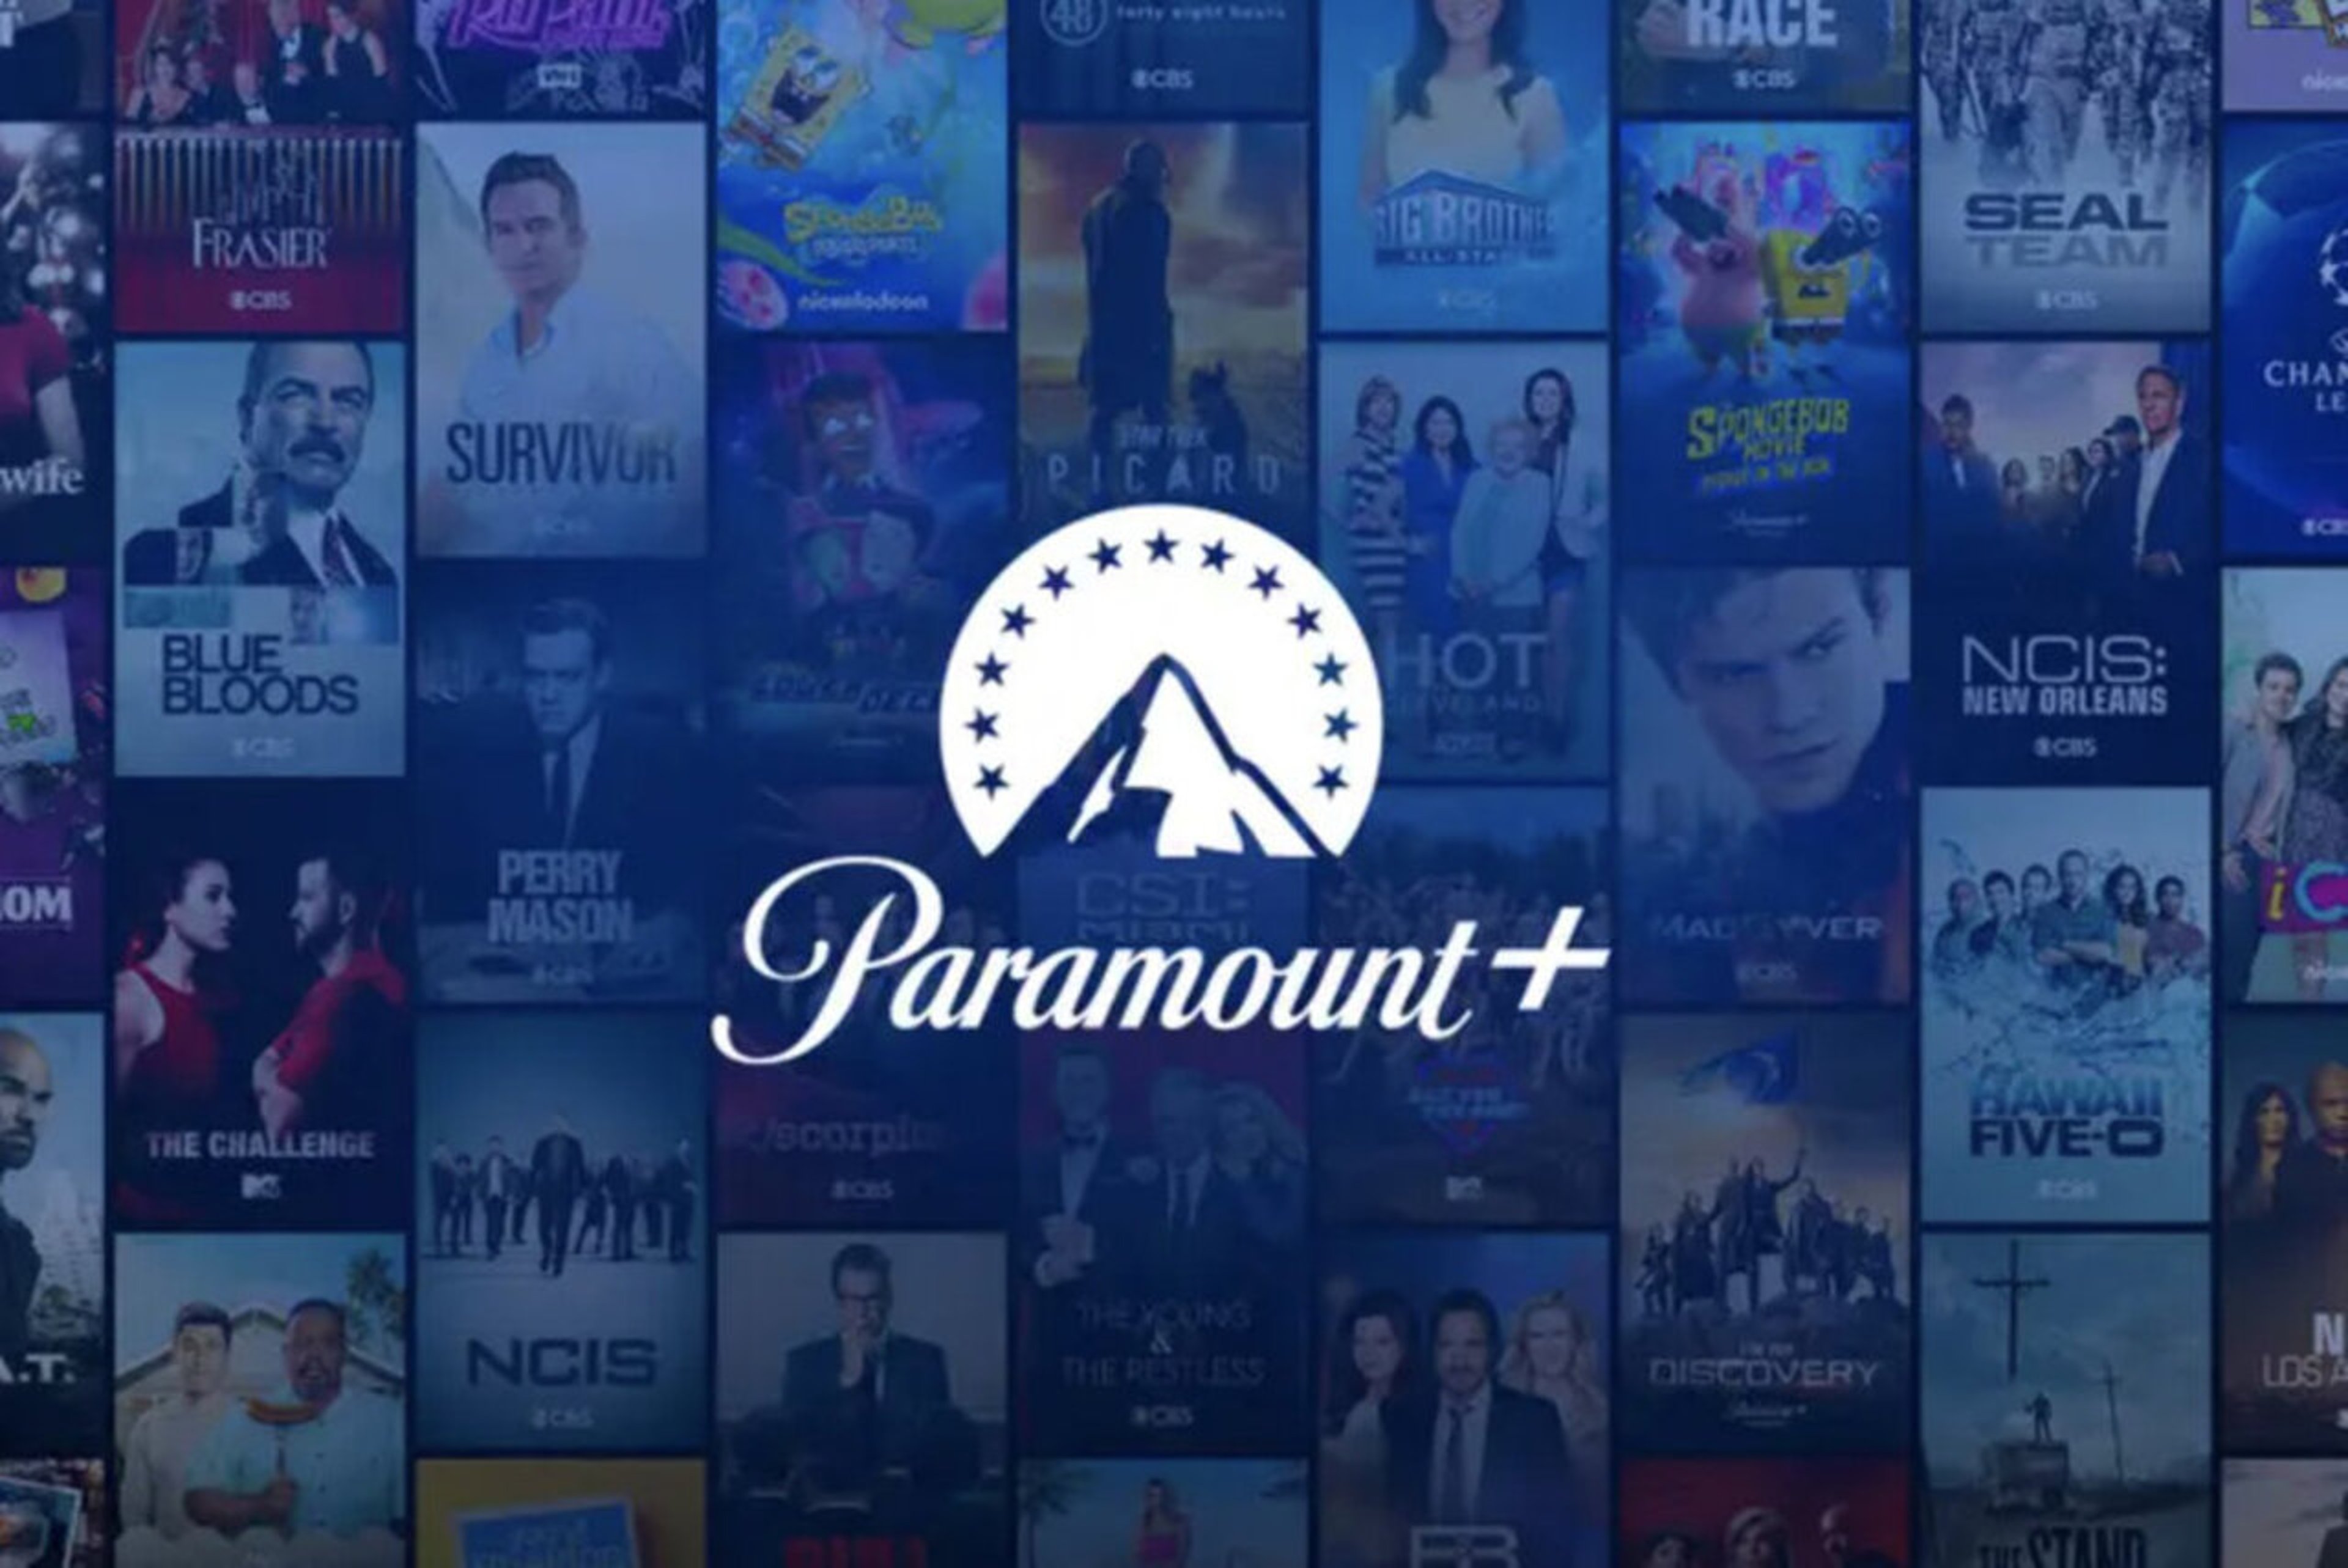 Ecco come attivare Paramount+ su Sky senza costi aggiunti